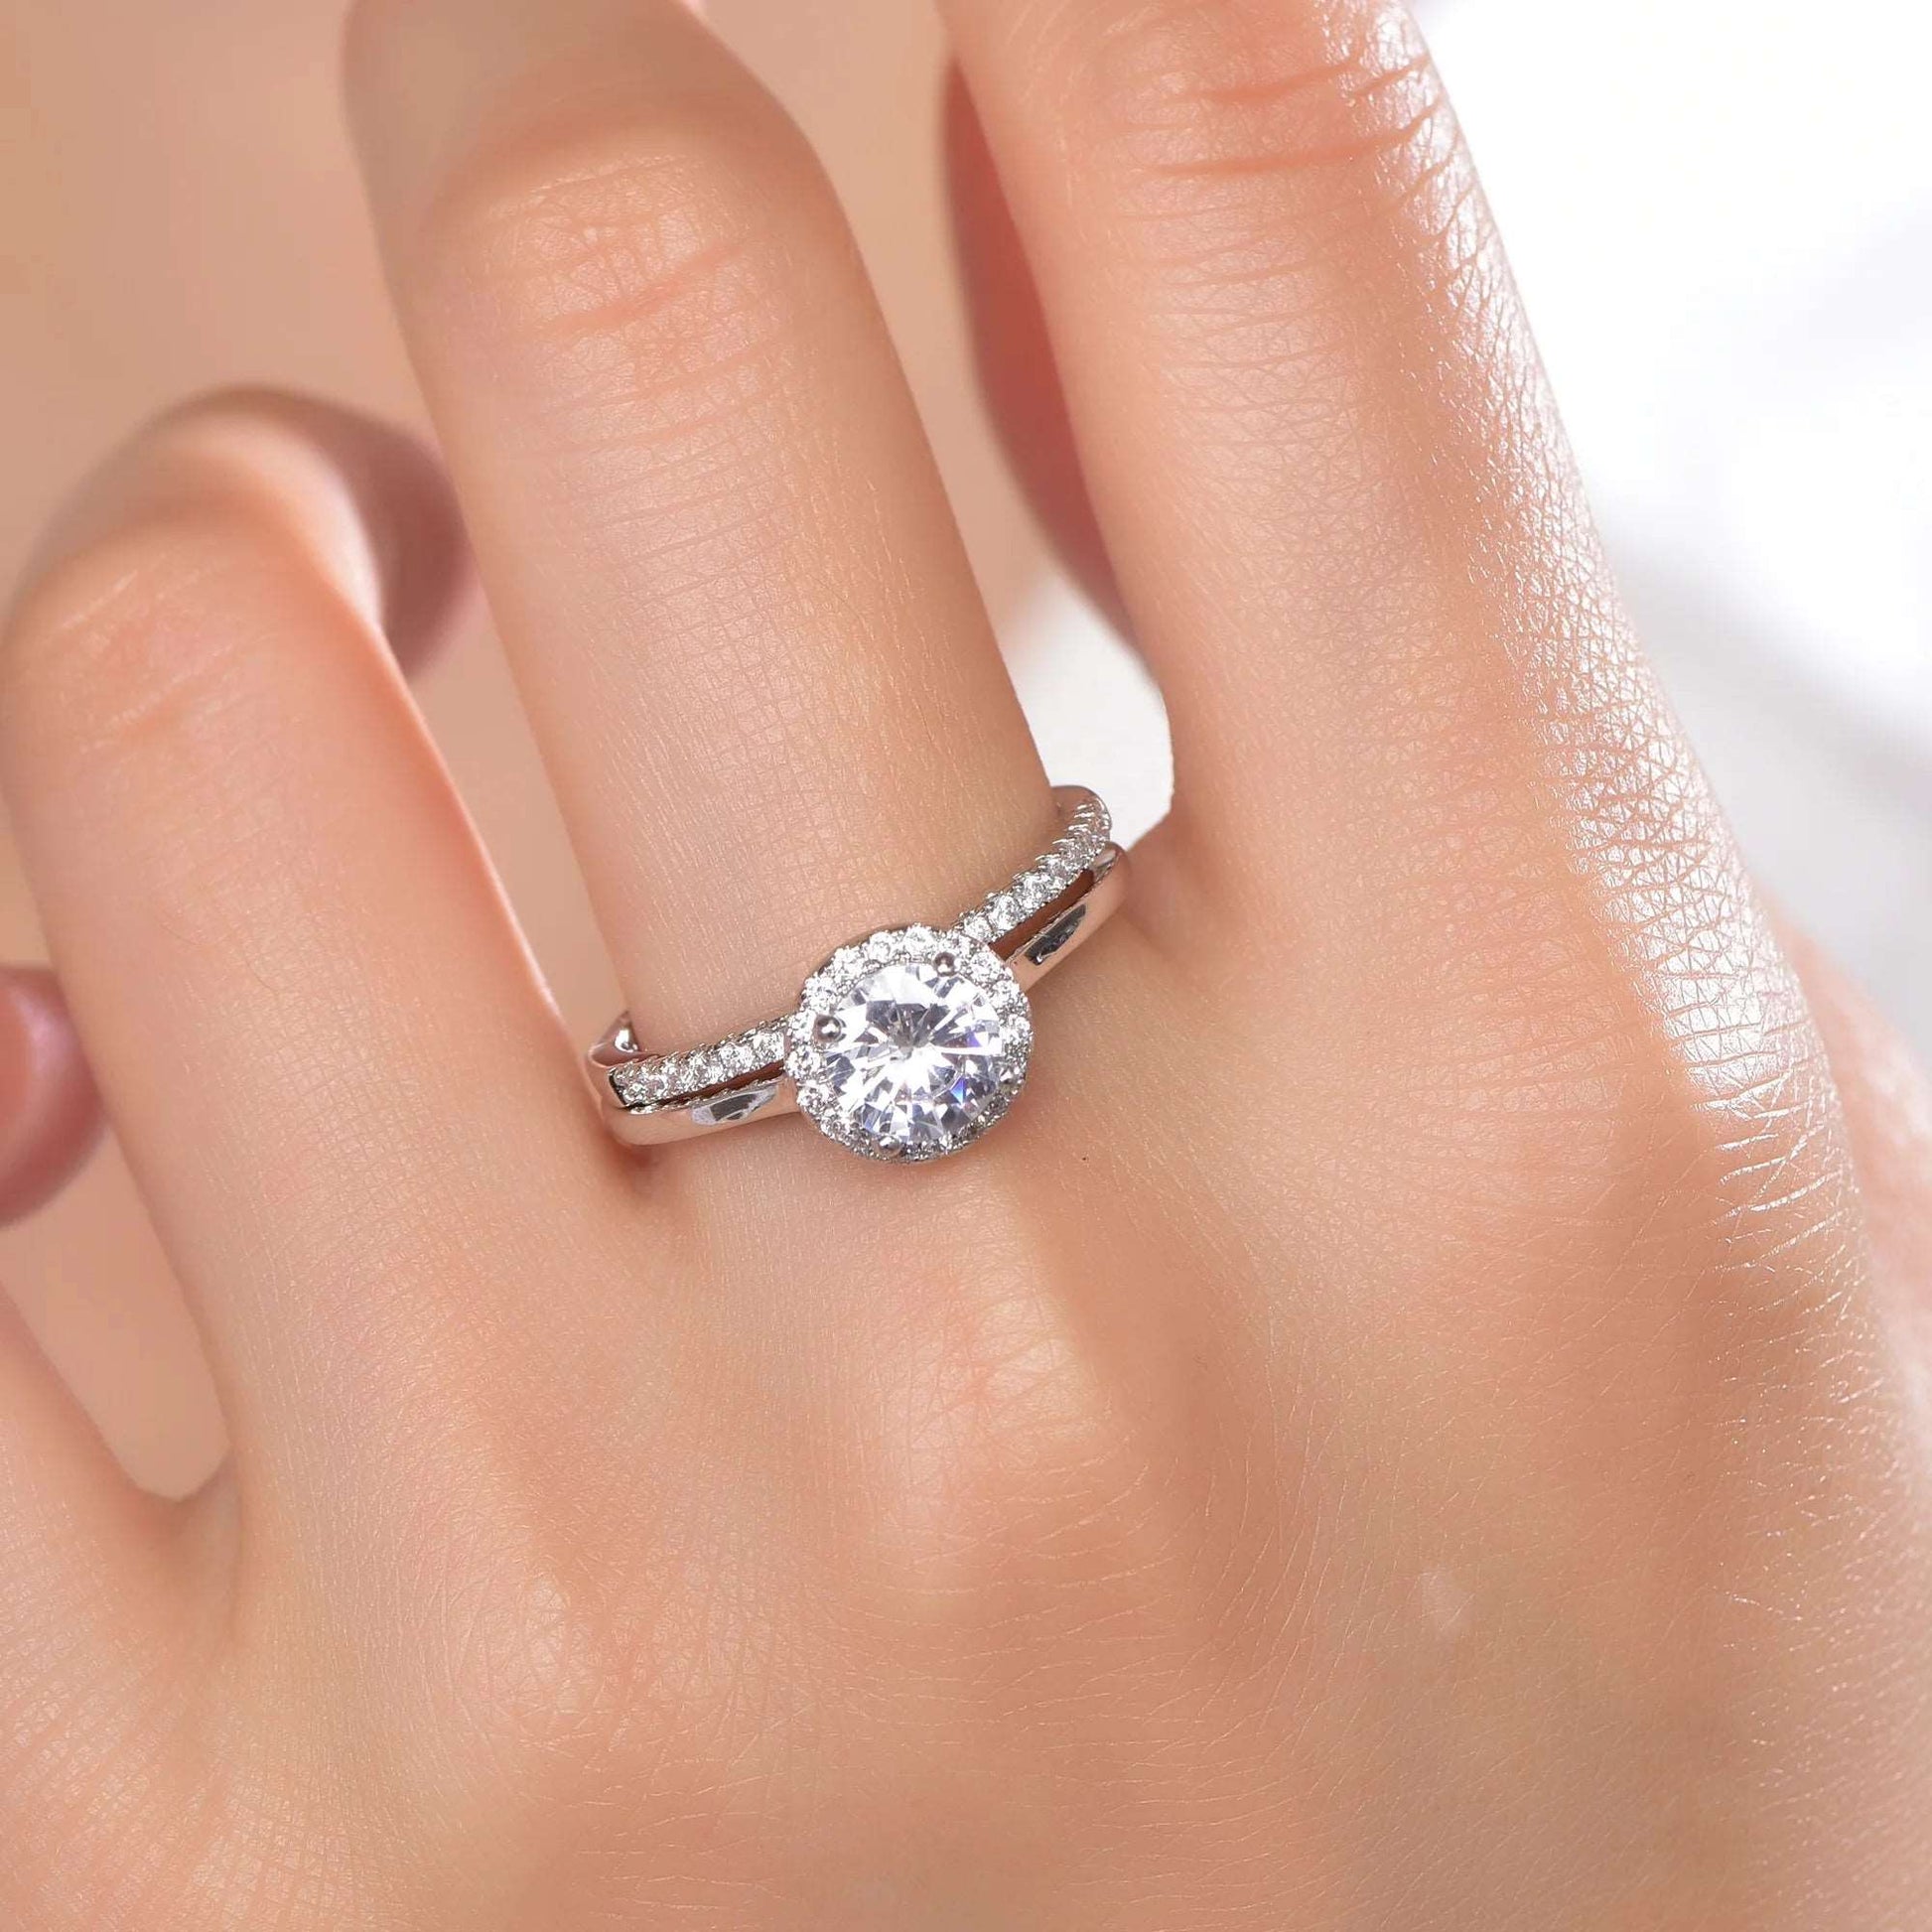 18k white gold wedding ring 925 silver engagement rings set 925 wedding ring set Kirin Jewelry